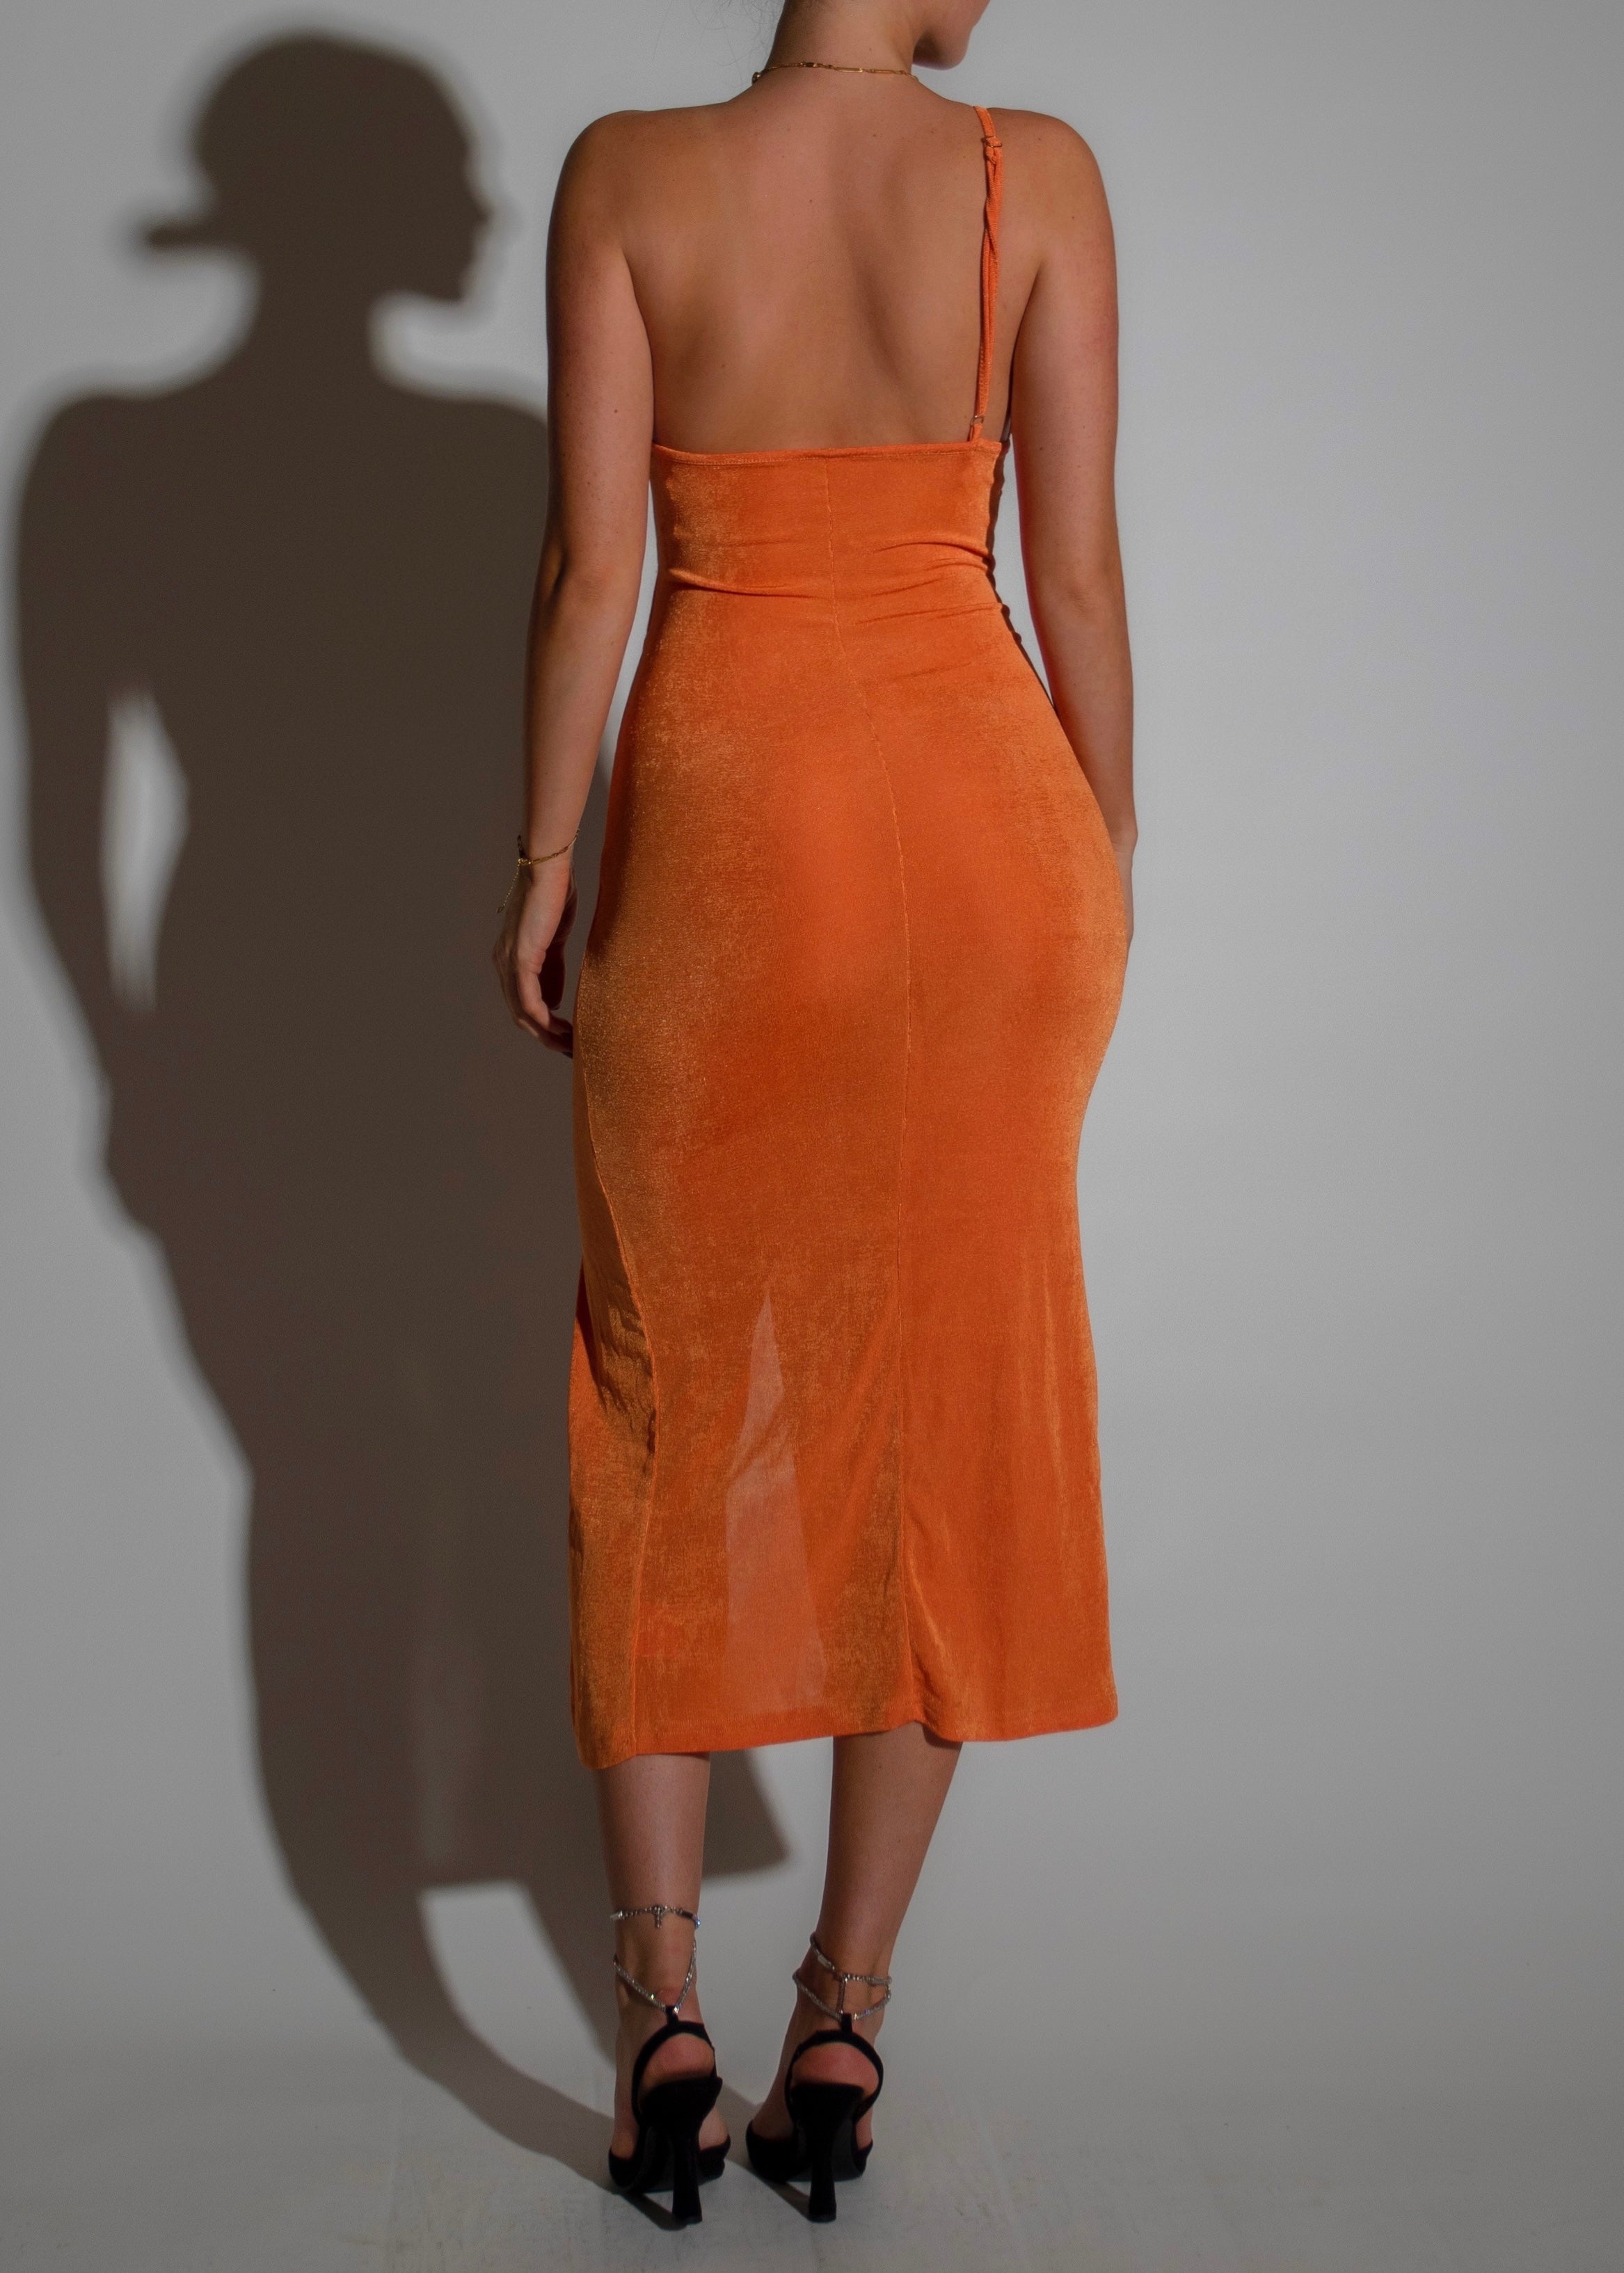 ABI - Orange Maxi Dress